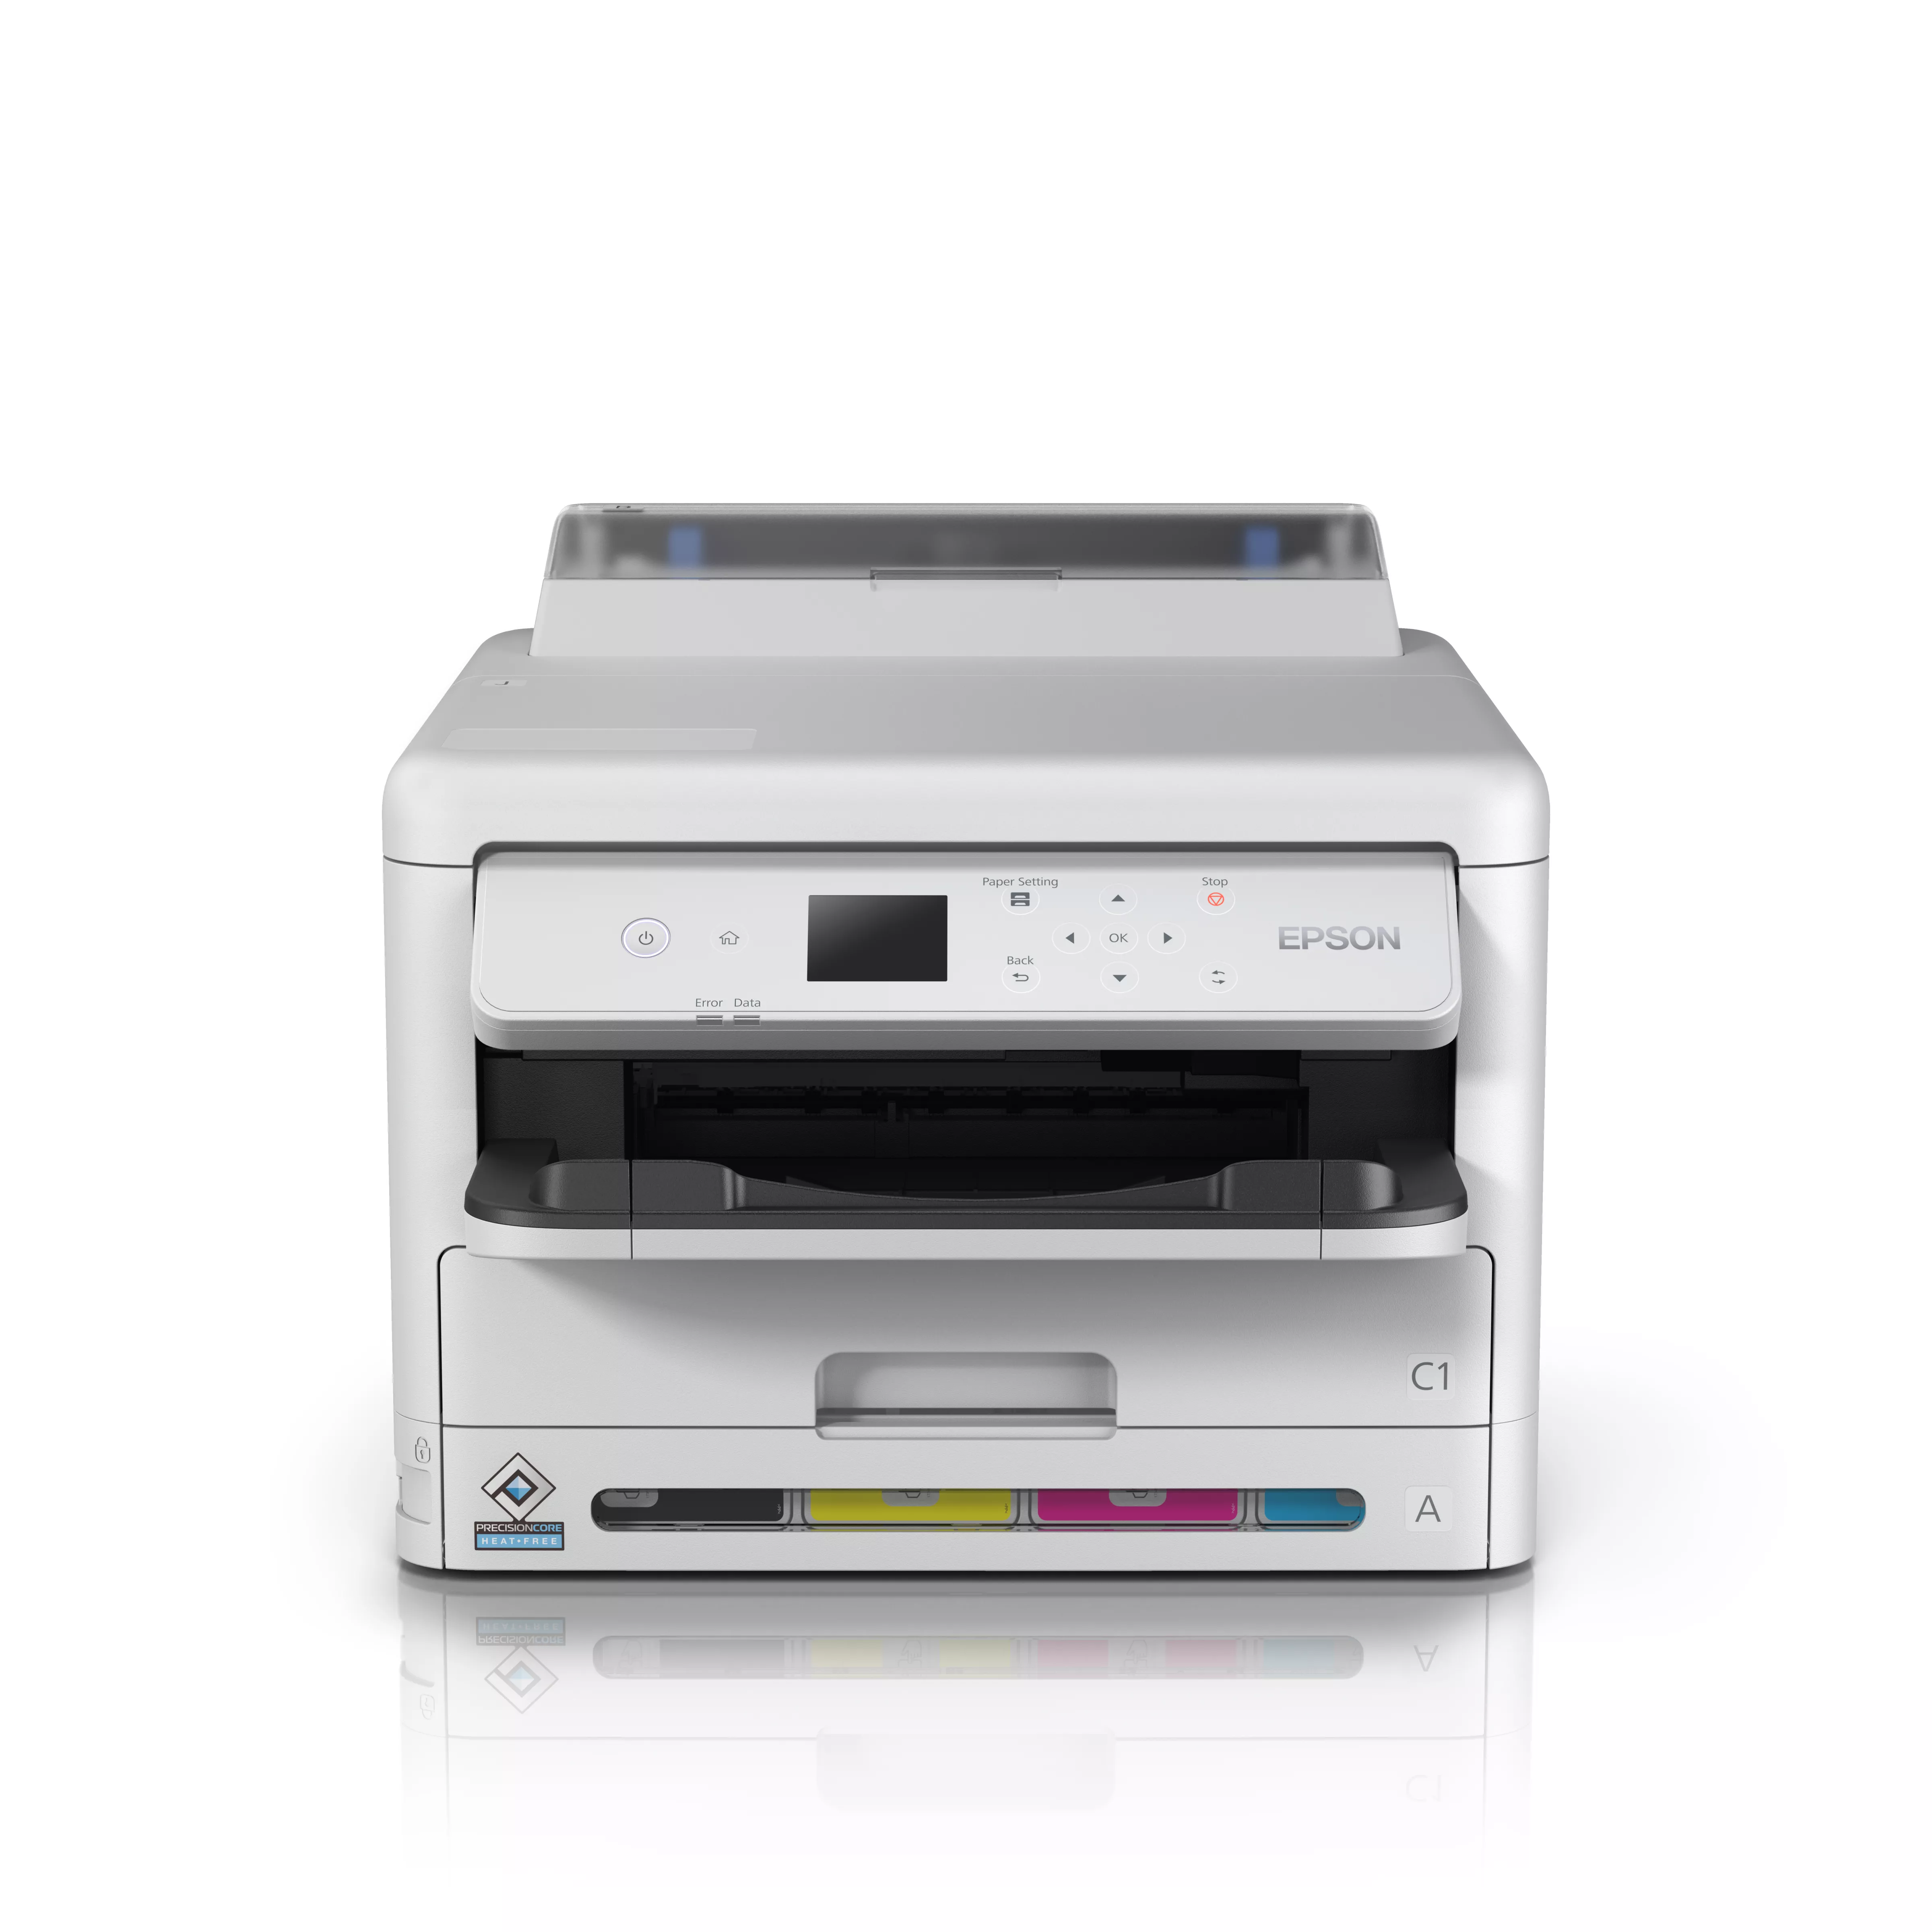 Vente EPSON WorkForce Pro WF-C5390DW Printer colour Duplex au meilleur prix